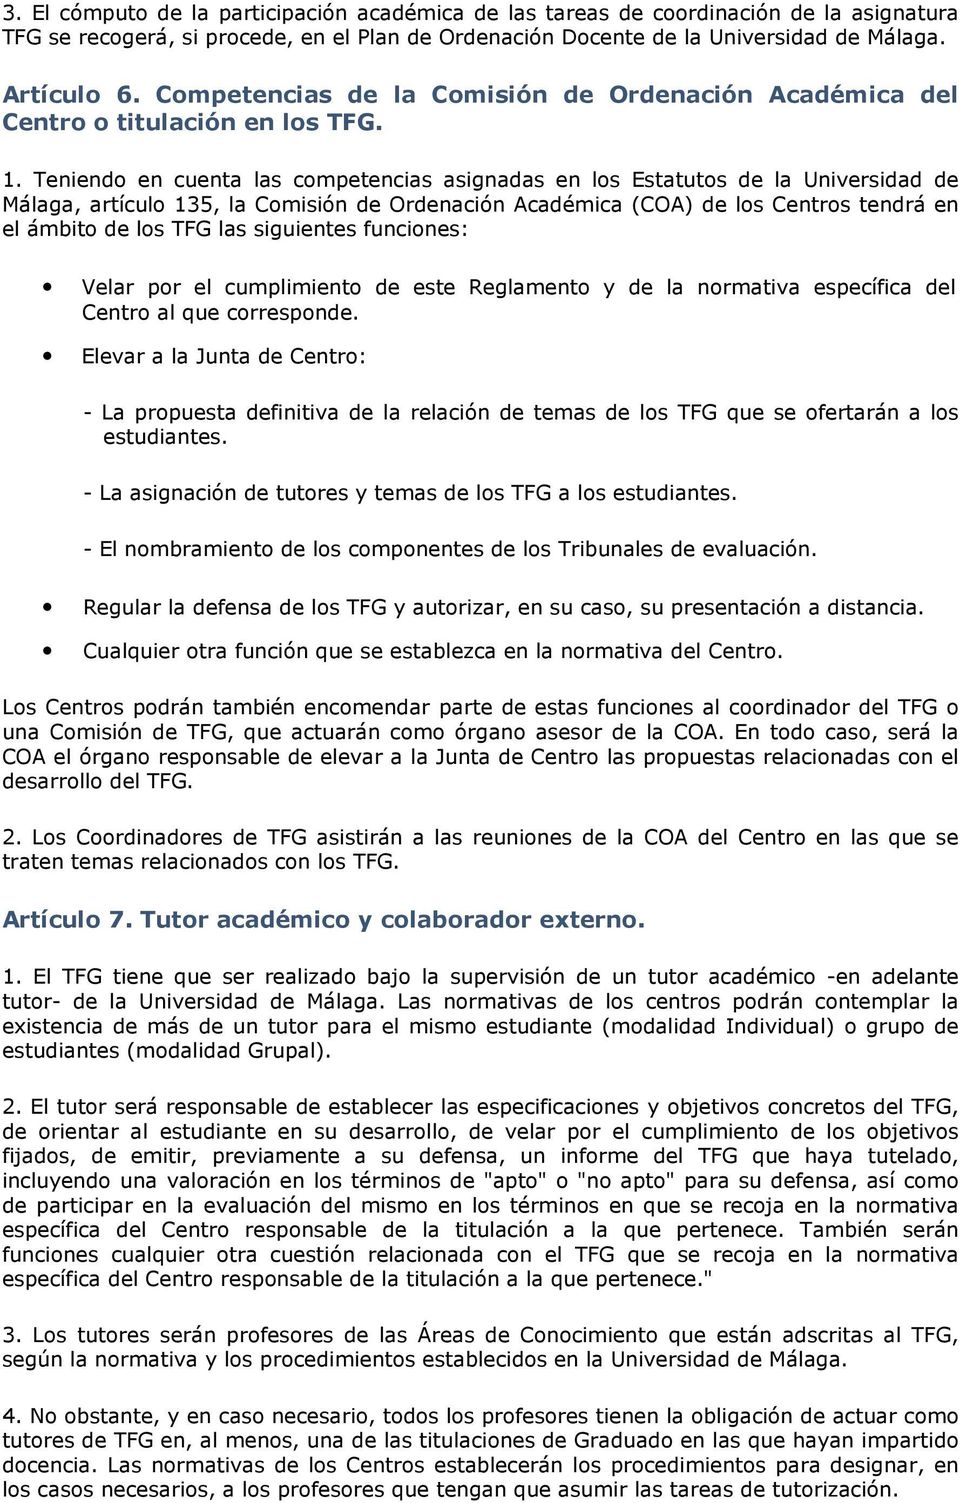 Teniendo en cuenta las competencias asignadas en los Estatutos de la Universidad de Málaga, artículo 135, la Comisión de Ordenación Académica (COA) de los Centros tendrá en el ámbito de los TFG las